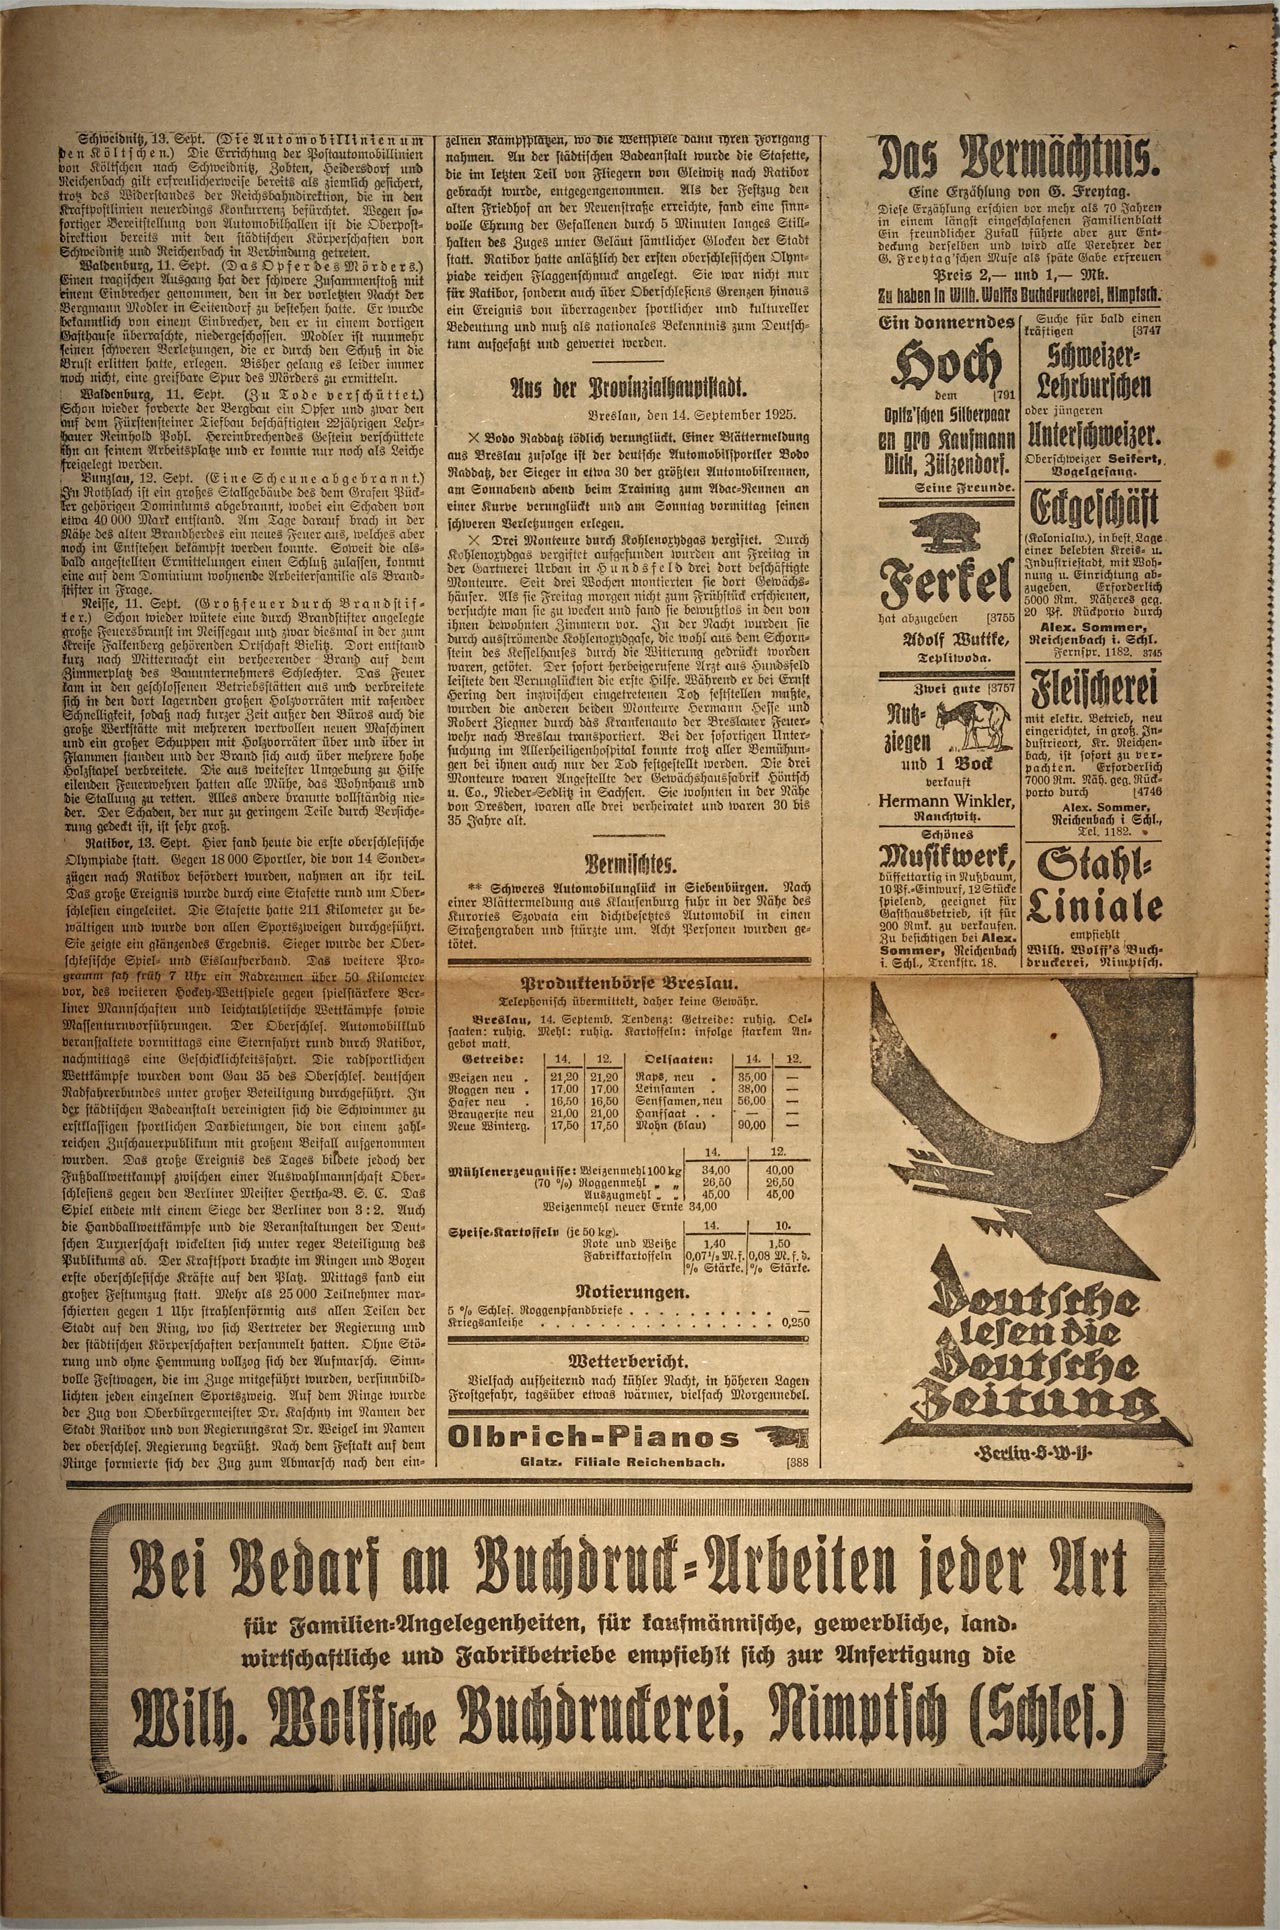 Der Landsmann 15.09.1925 Seite 3